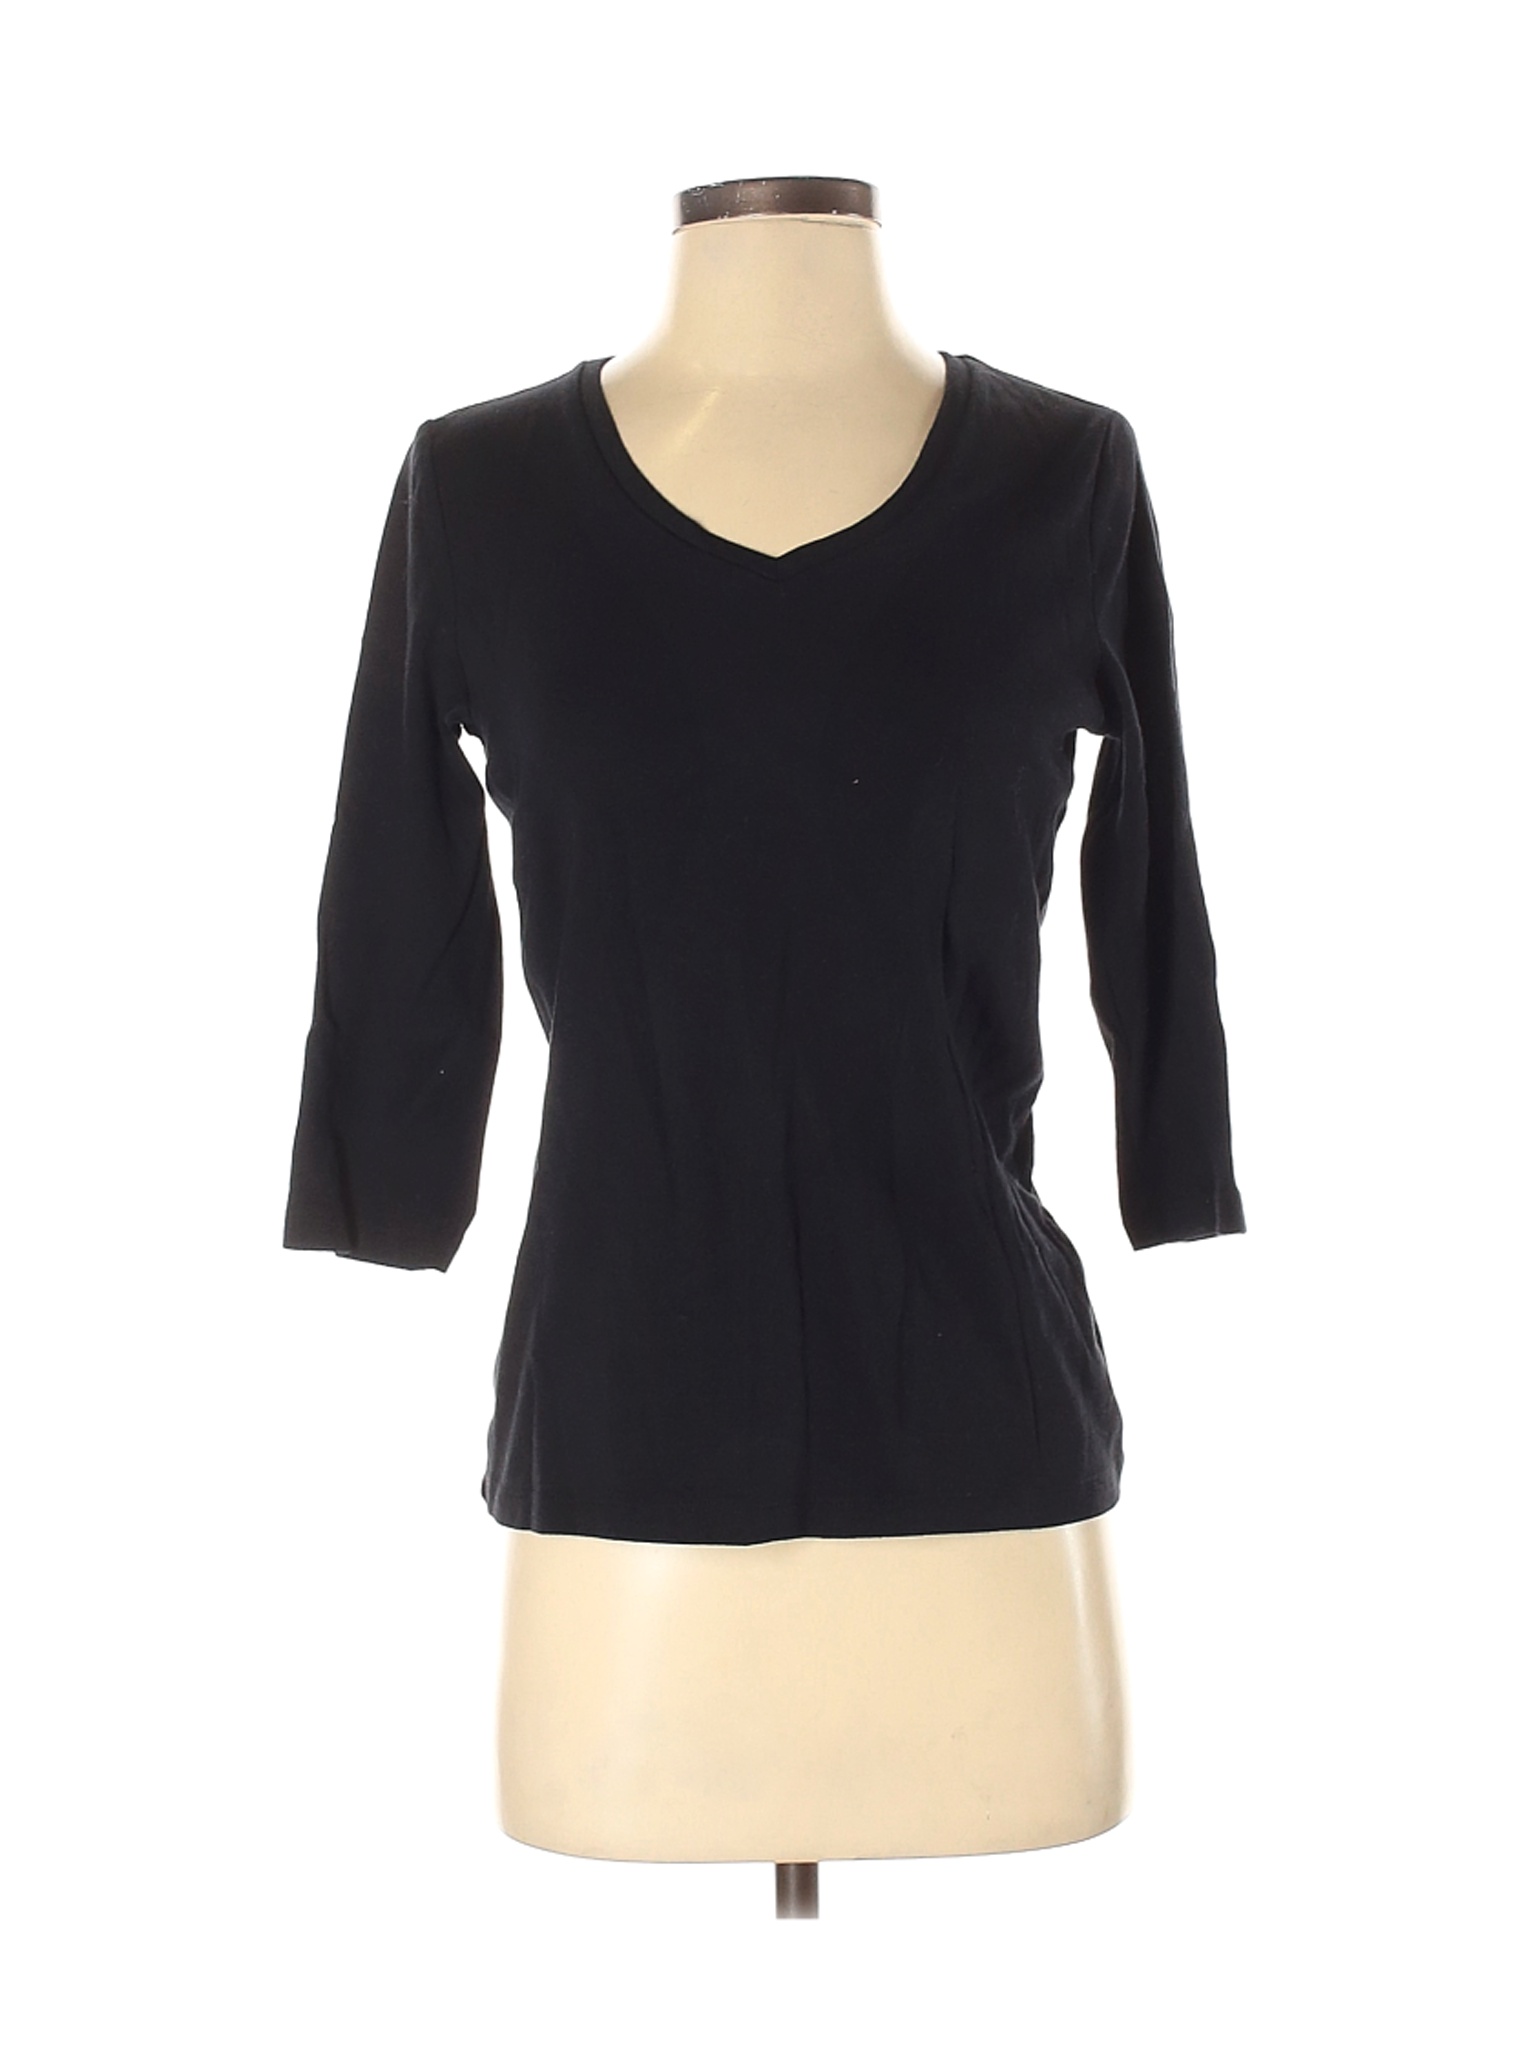 St. John's Bay Women Black 3/4 Sleeve T-Shirt S | eBay